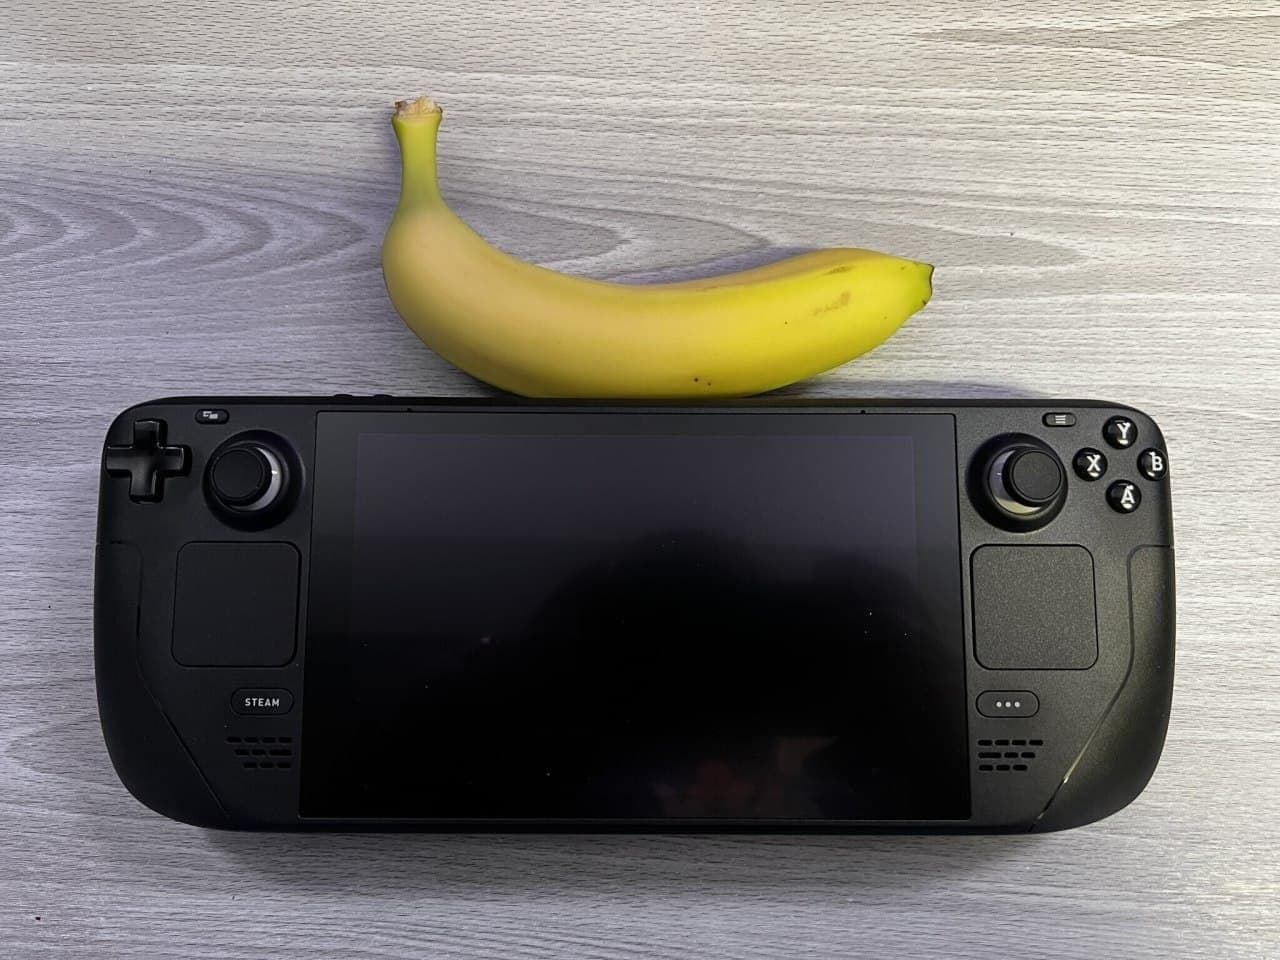 Confronto visivo di Steam Deck con altre console portatili e una banana-2